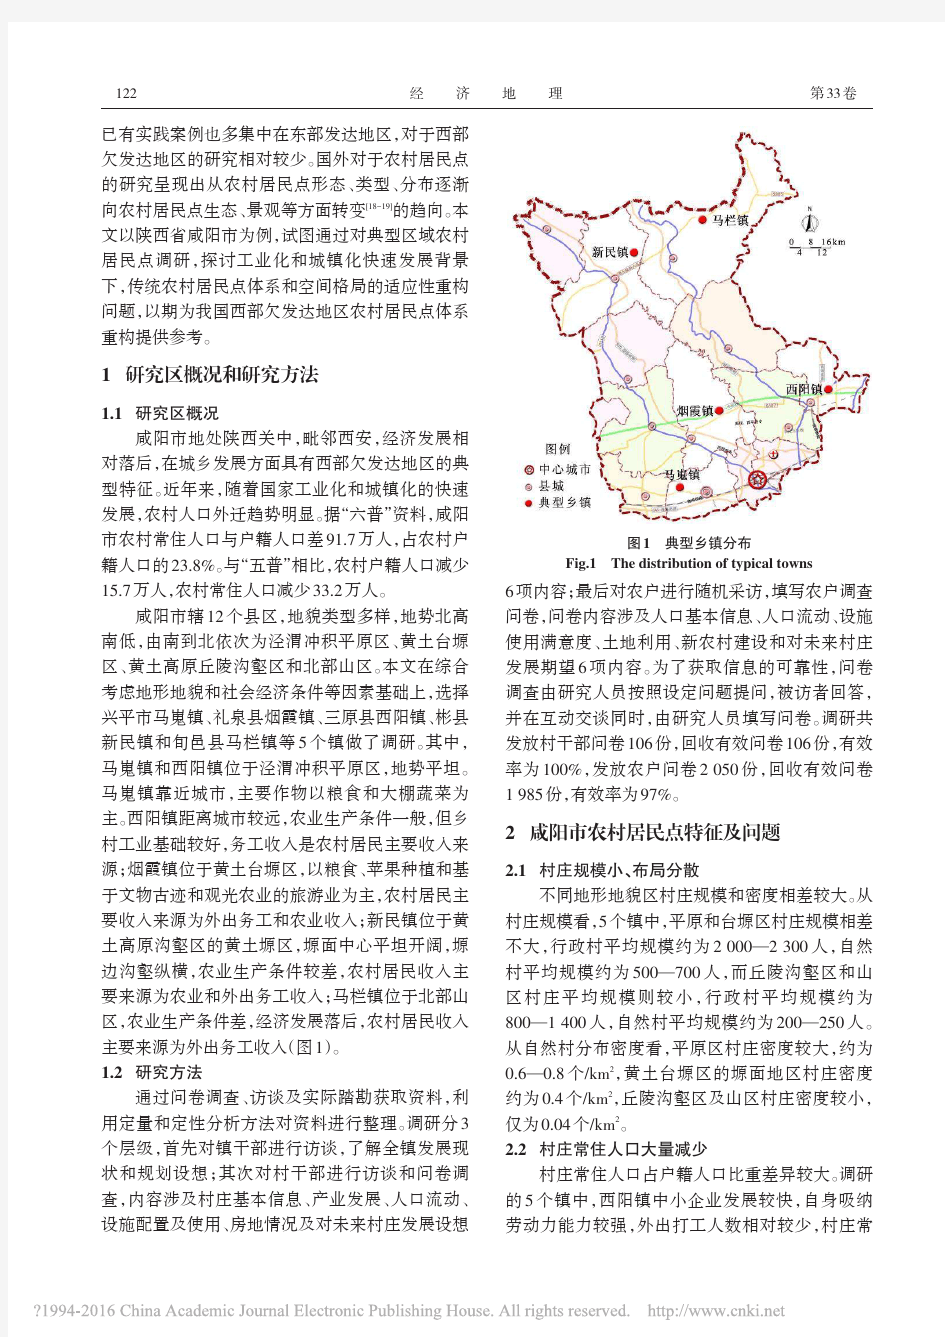 欠发达地区农村居民点体系重构模式研究_以咸阳市为例_赵思敏